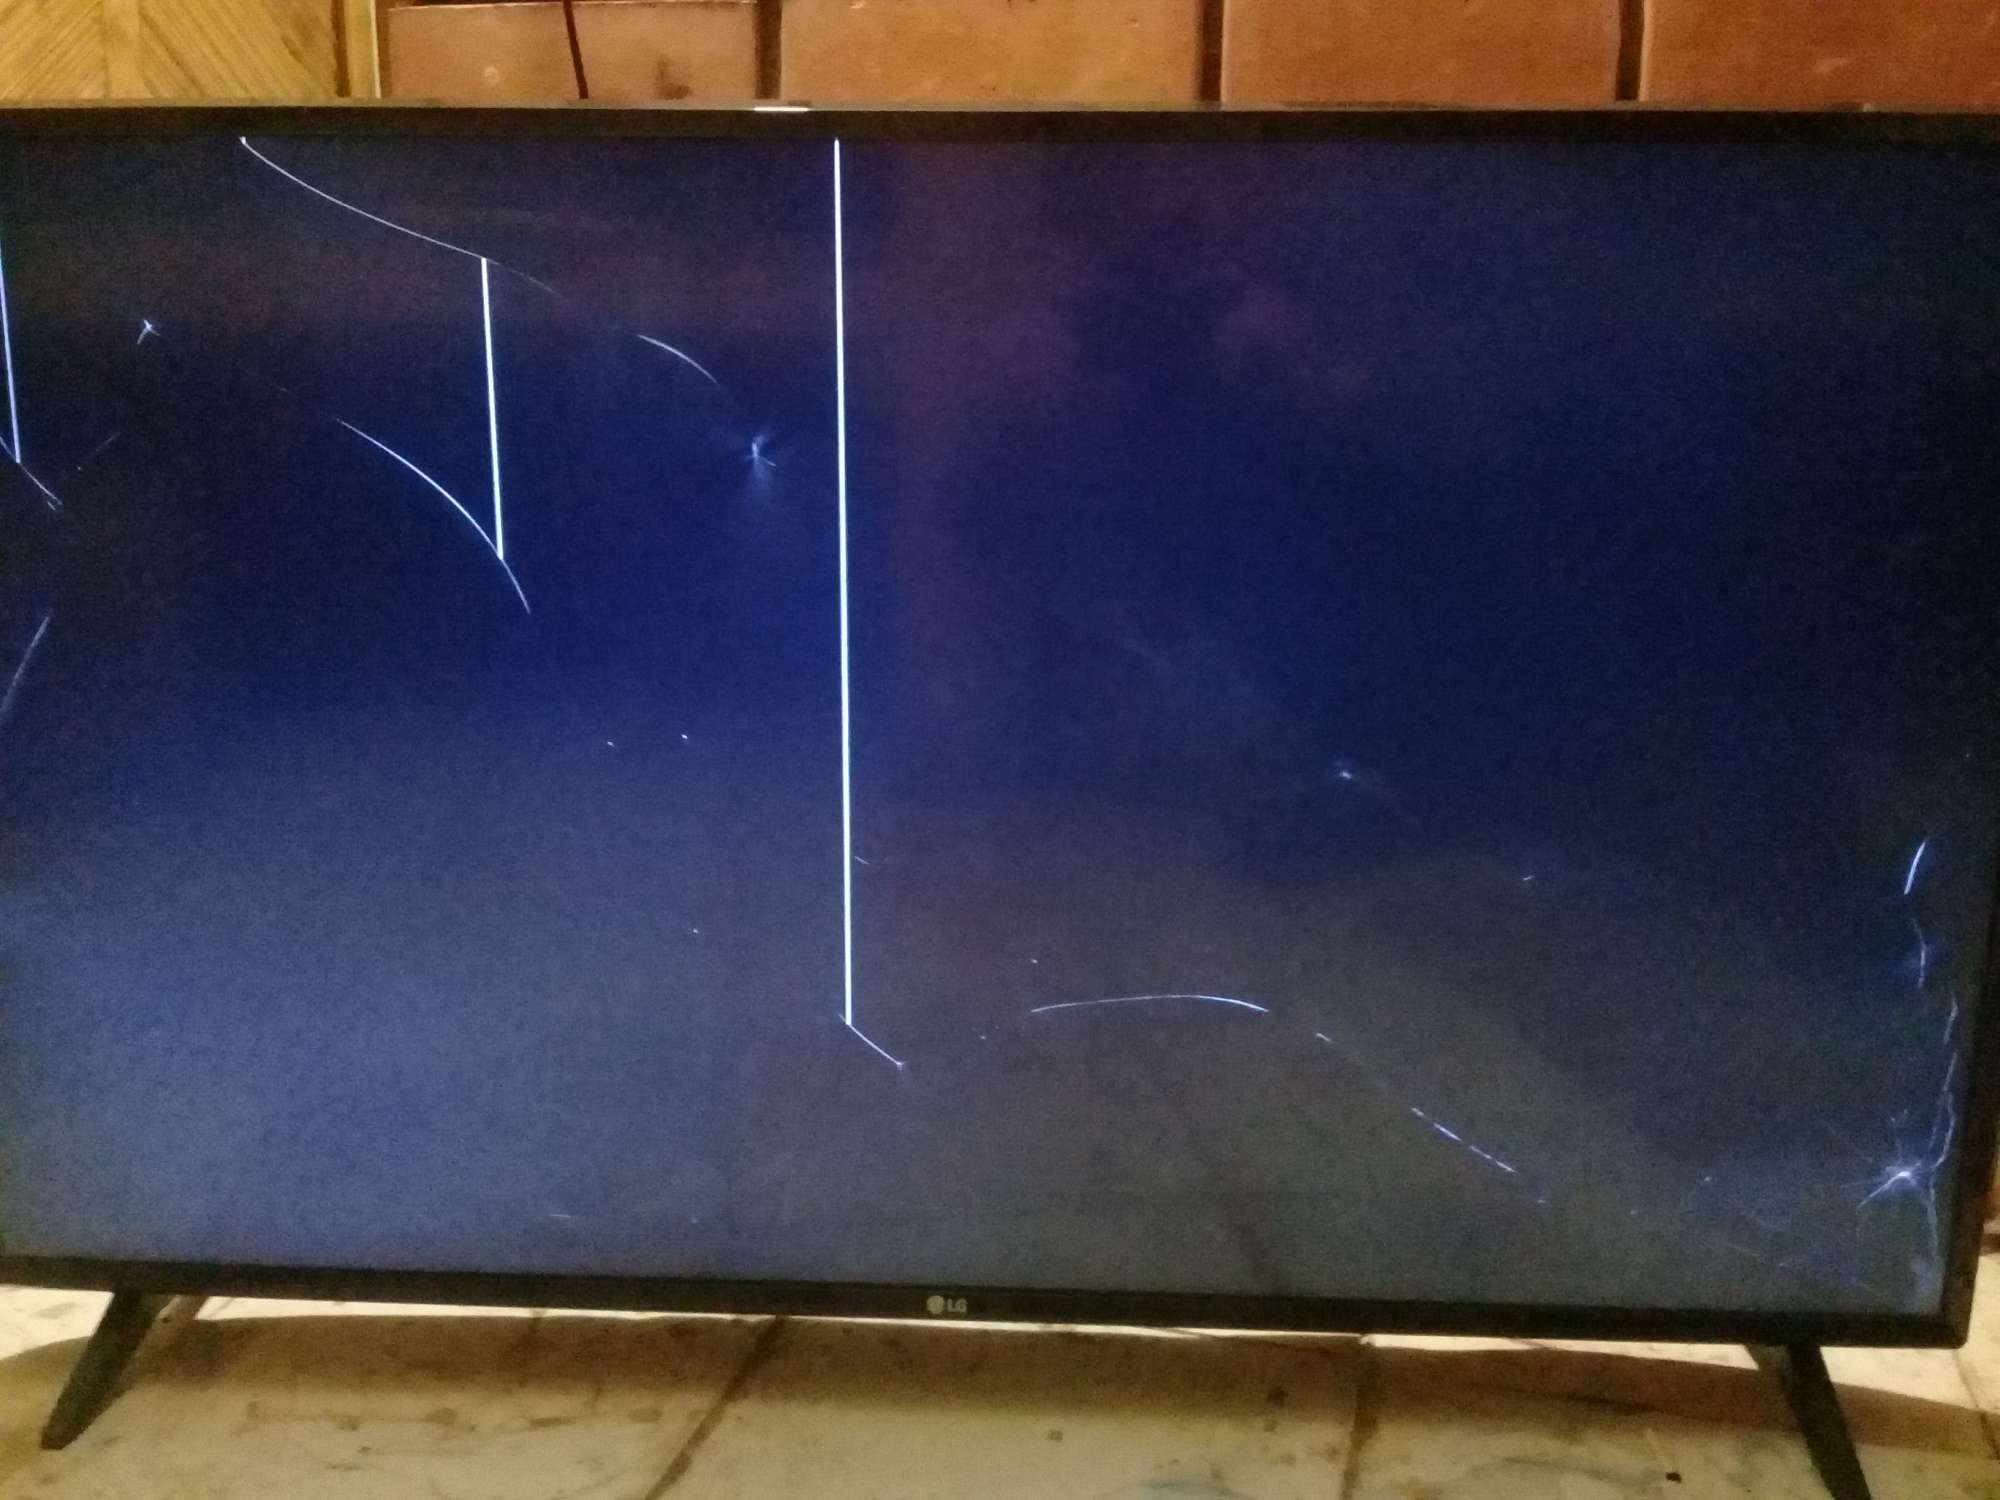 Починить разбитый телевизор. Разбитый телевизор. Разбитый экран телевизора. Разбитый экран телевизора LG. Телевизор LG С разбитым экраном.